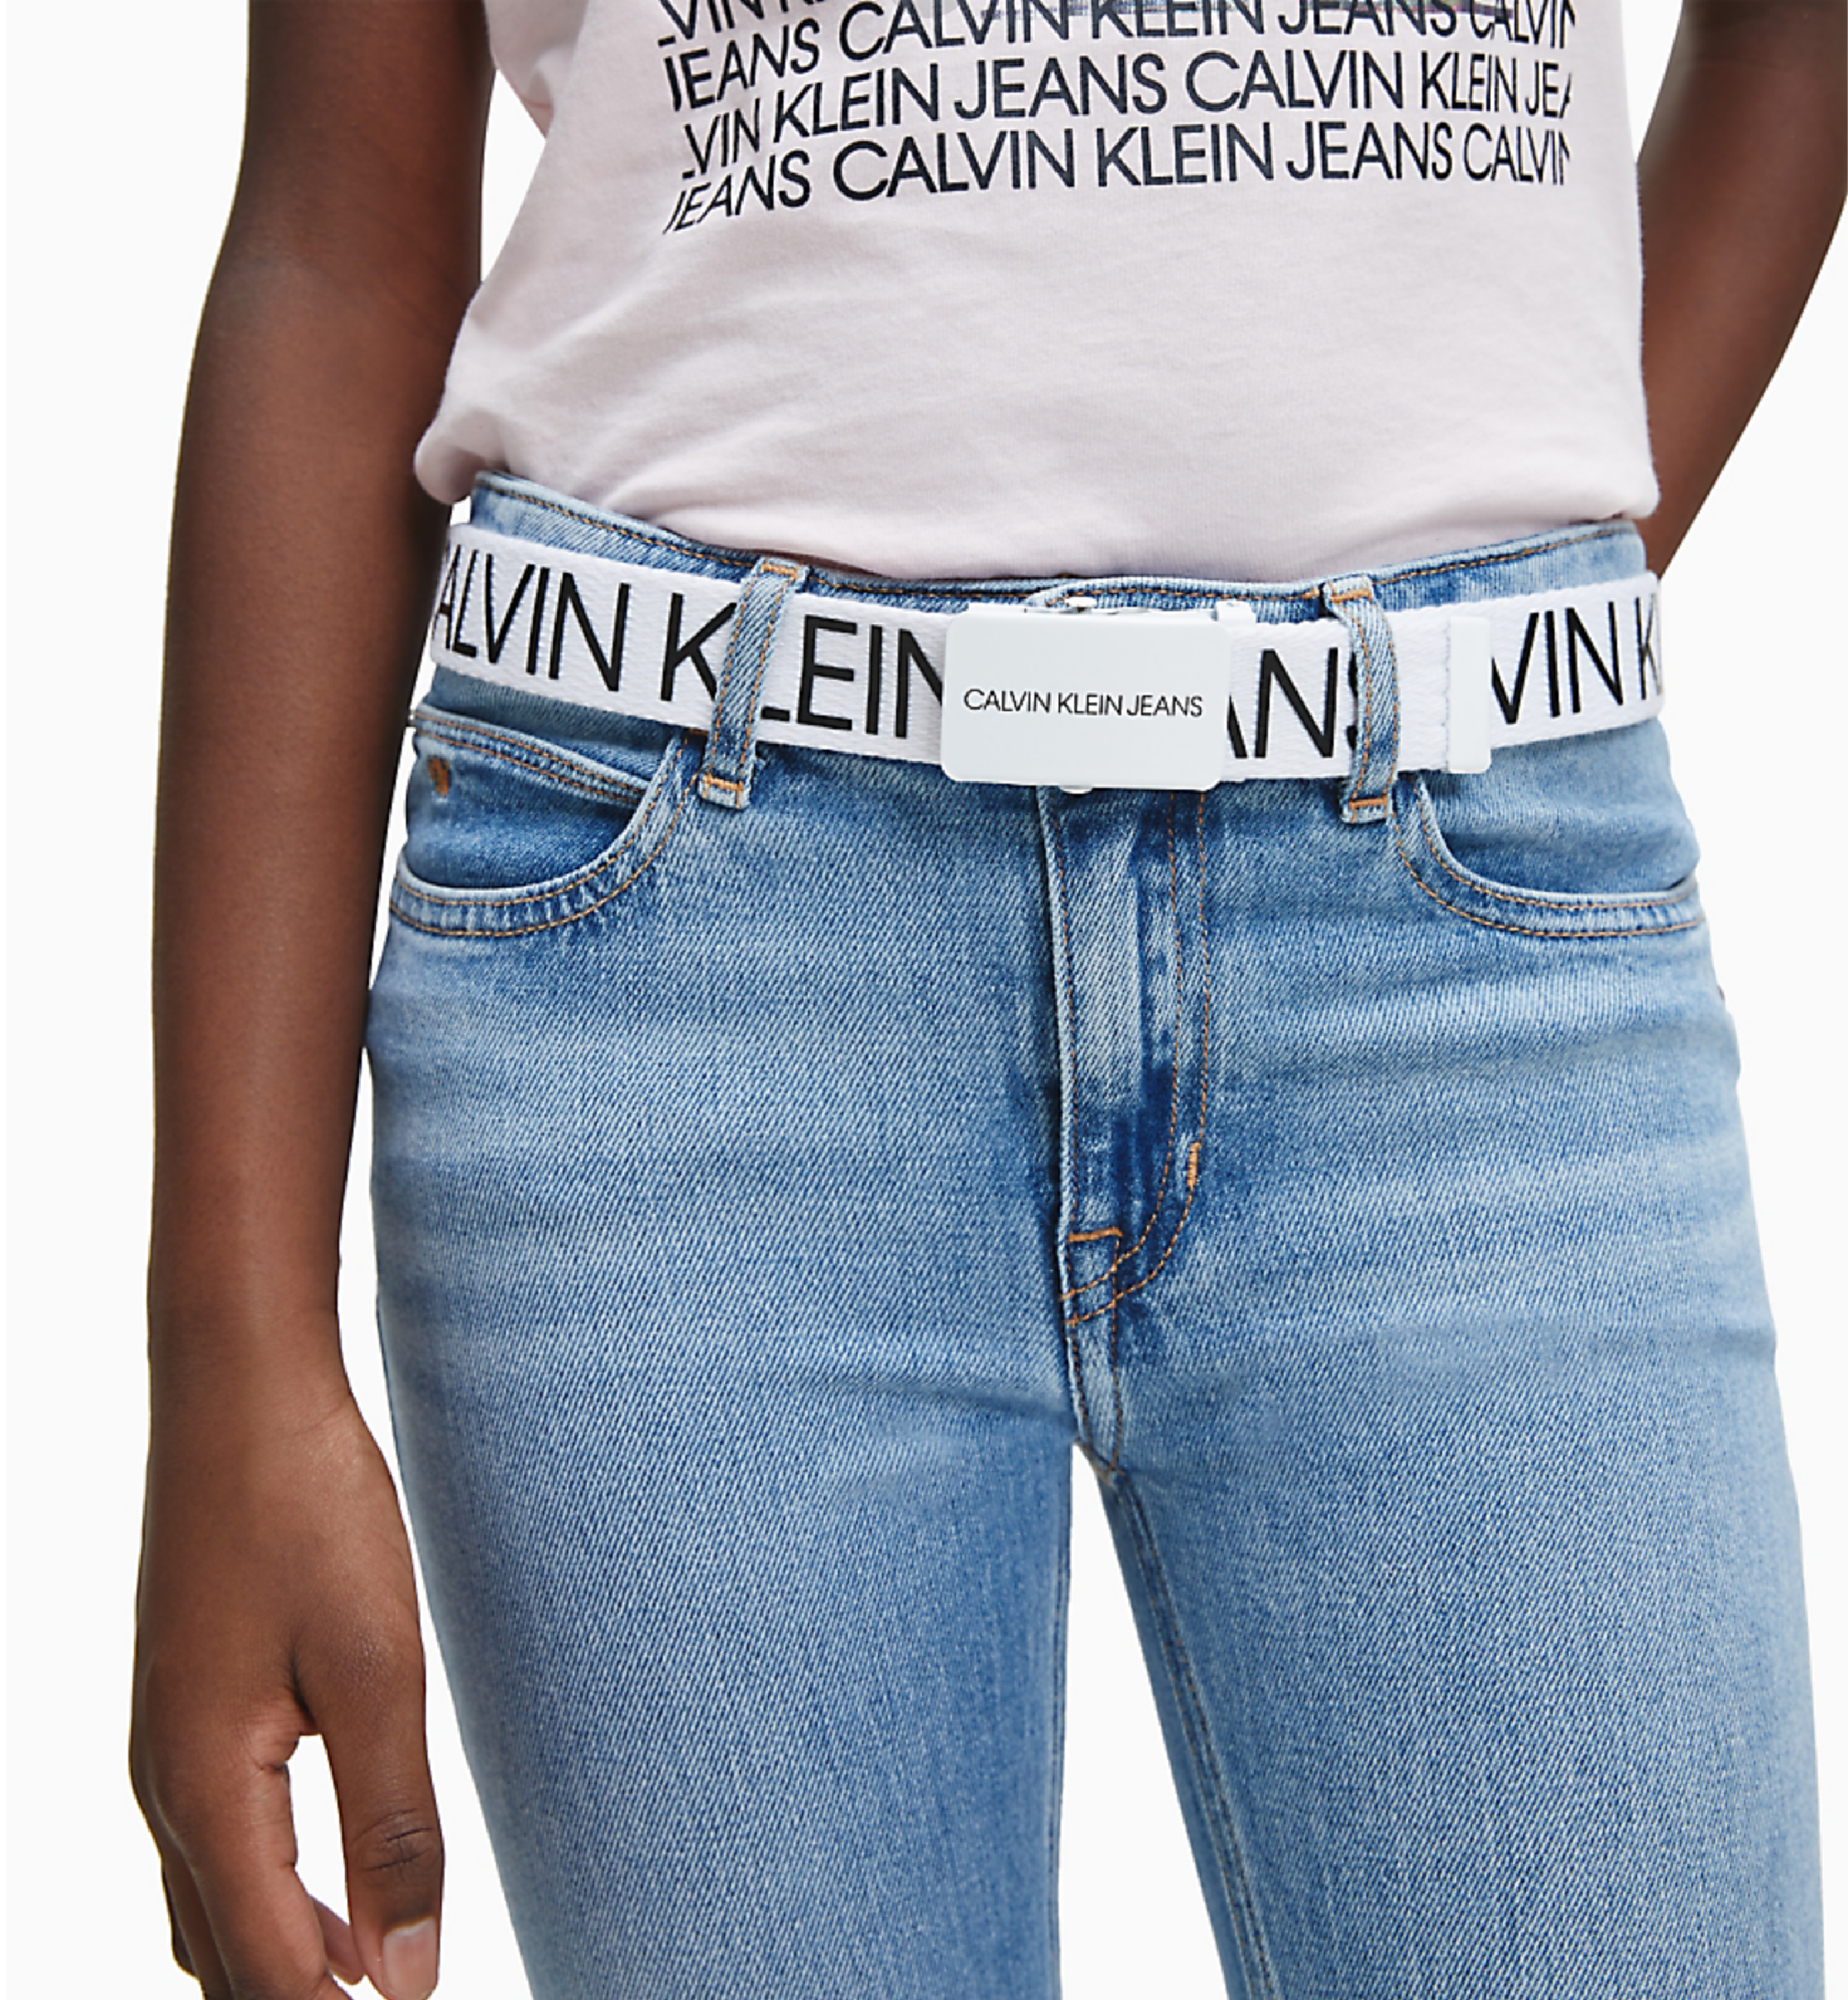 Unisexs Canvas Logo Belt van Calvin Klein in de kleur Wit in maat L-XL.